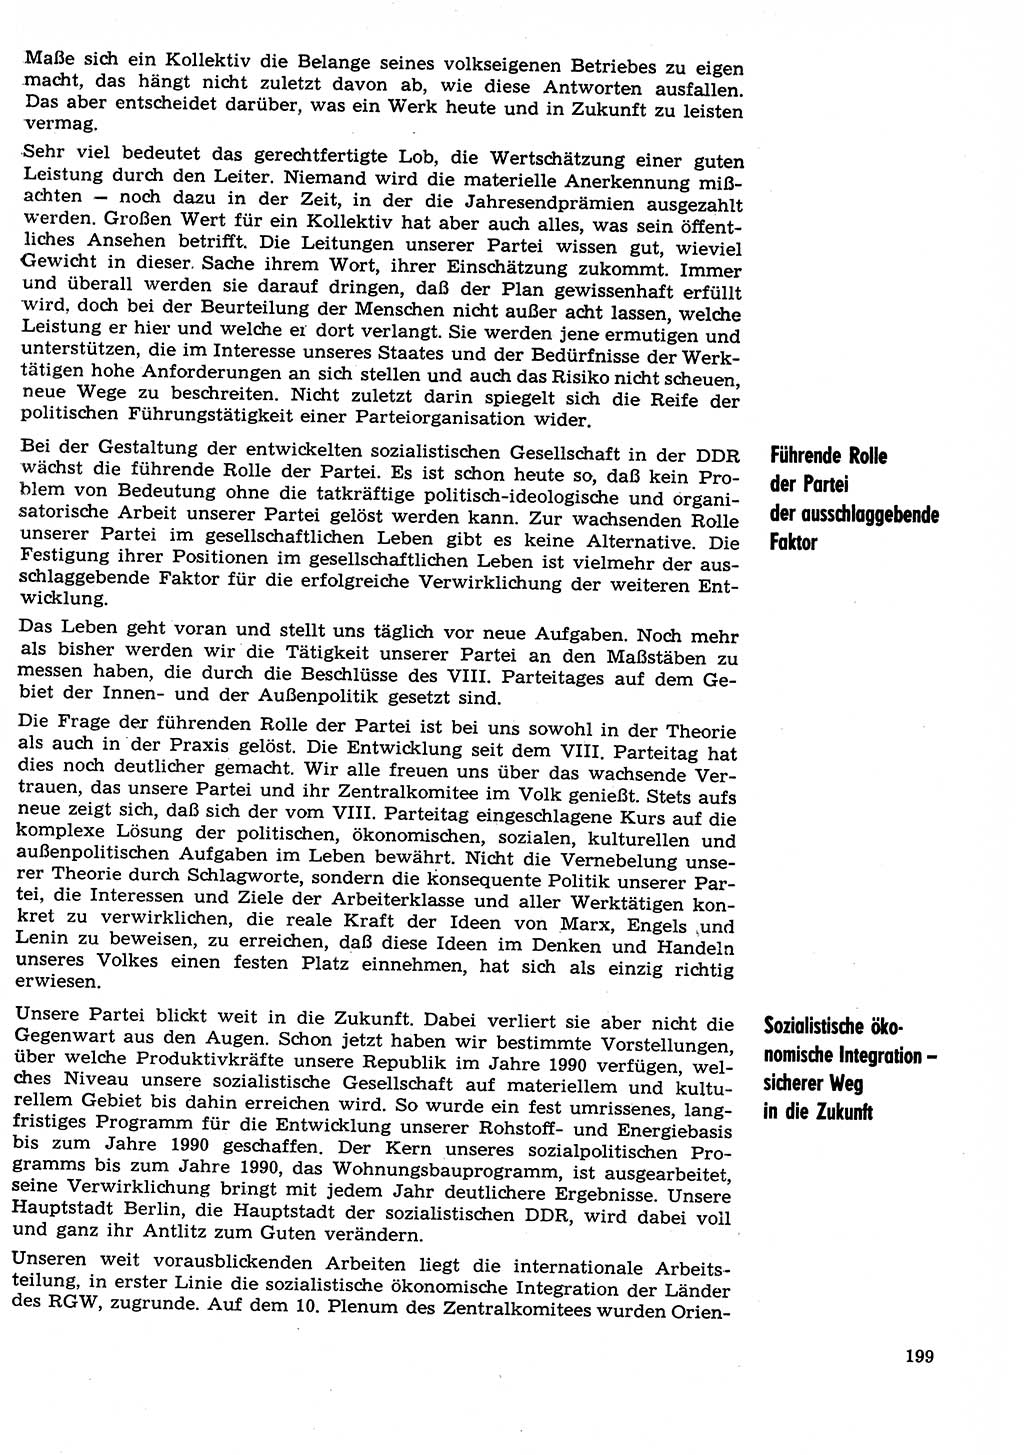 Neuer Weg (NW), Organ des Zentralkomitees (ZK) der SED (Sozialistische Einheitspartei Deutschlands) für Fragen des Parteilebens, 29. Jahrgang [Deutsche Demokratische Republik (DDR)] 1974, Seite 199 (NW ZK SED DDR 1974, S. 199)